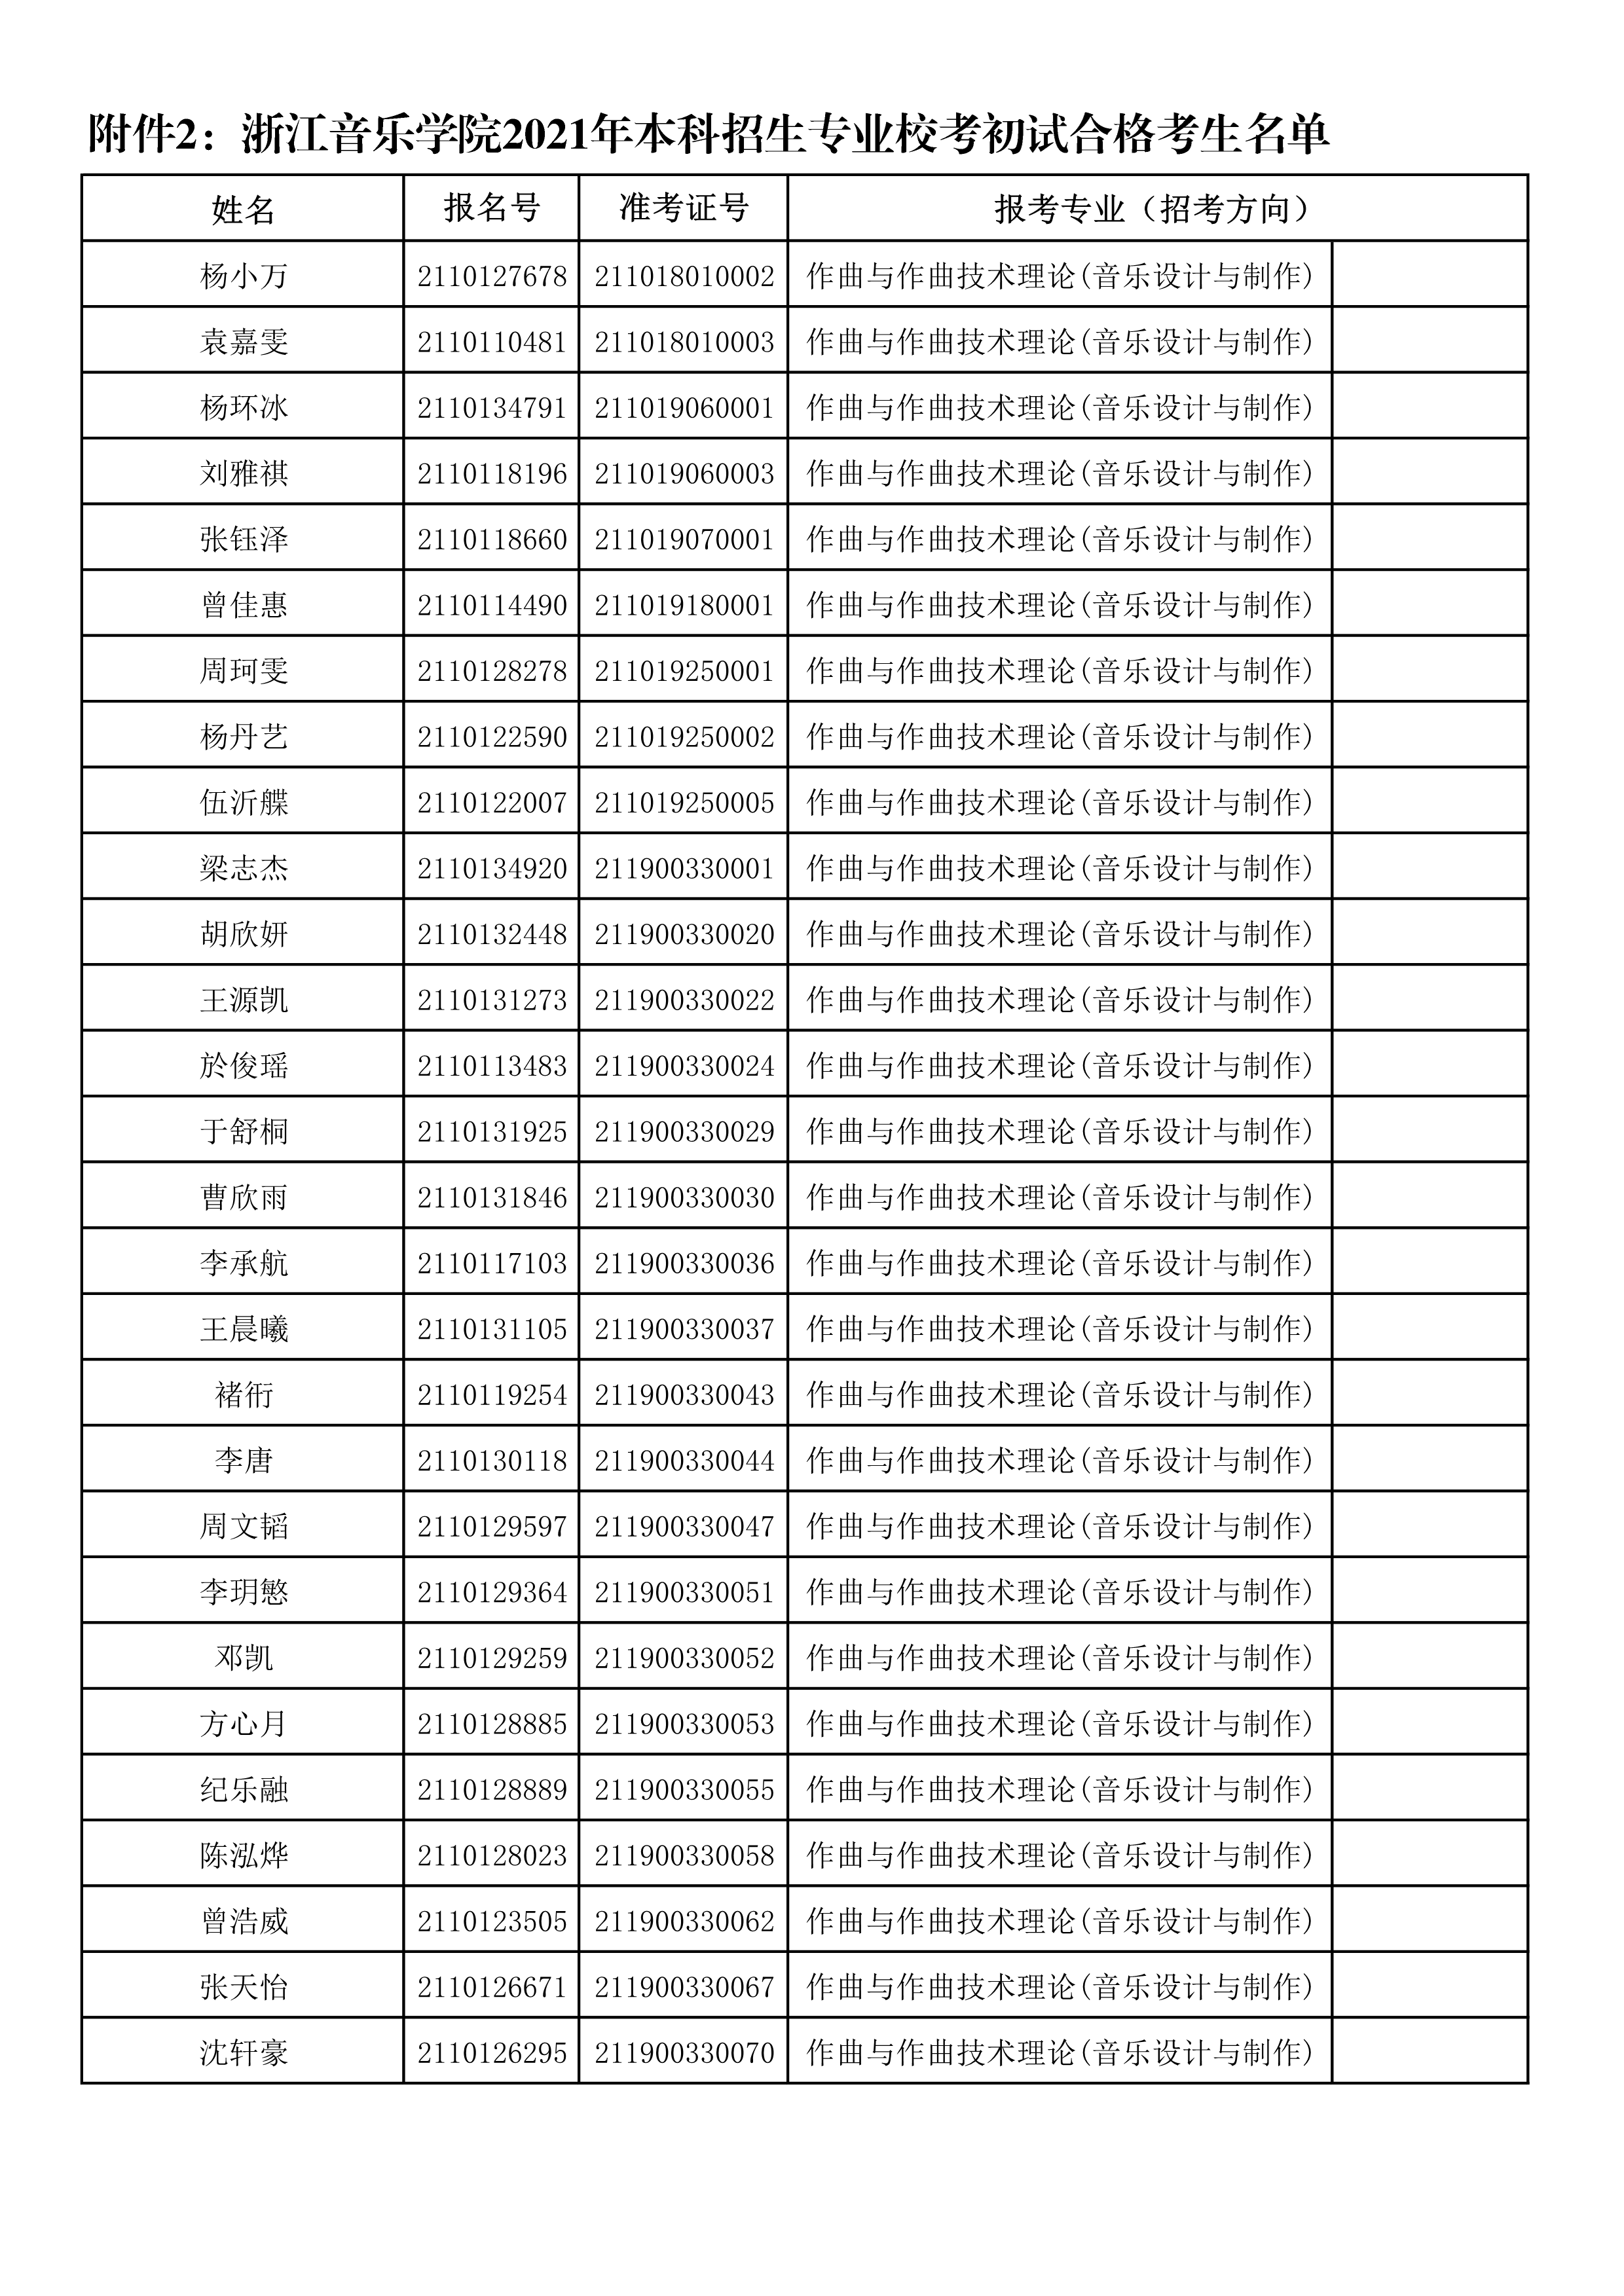 附件2：浙江音乐学院2021年本科招生专业校考初试合格考生名单_1.png